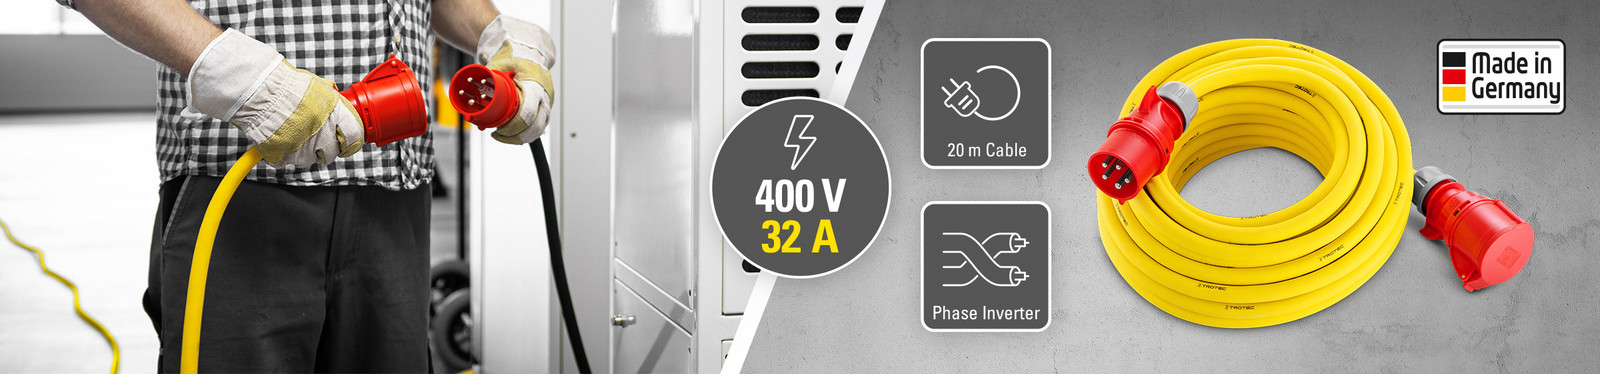 Επαγγελματικό καλώδιο επέκτασης 400 V (32 A) – Made in Germany